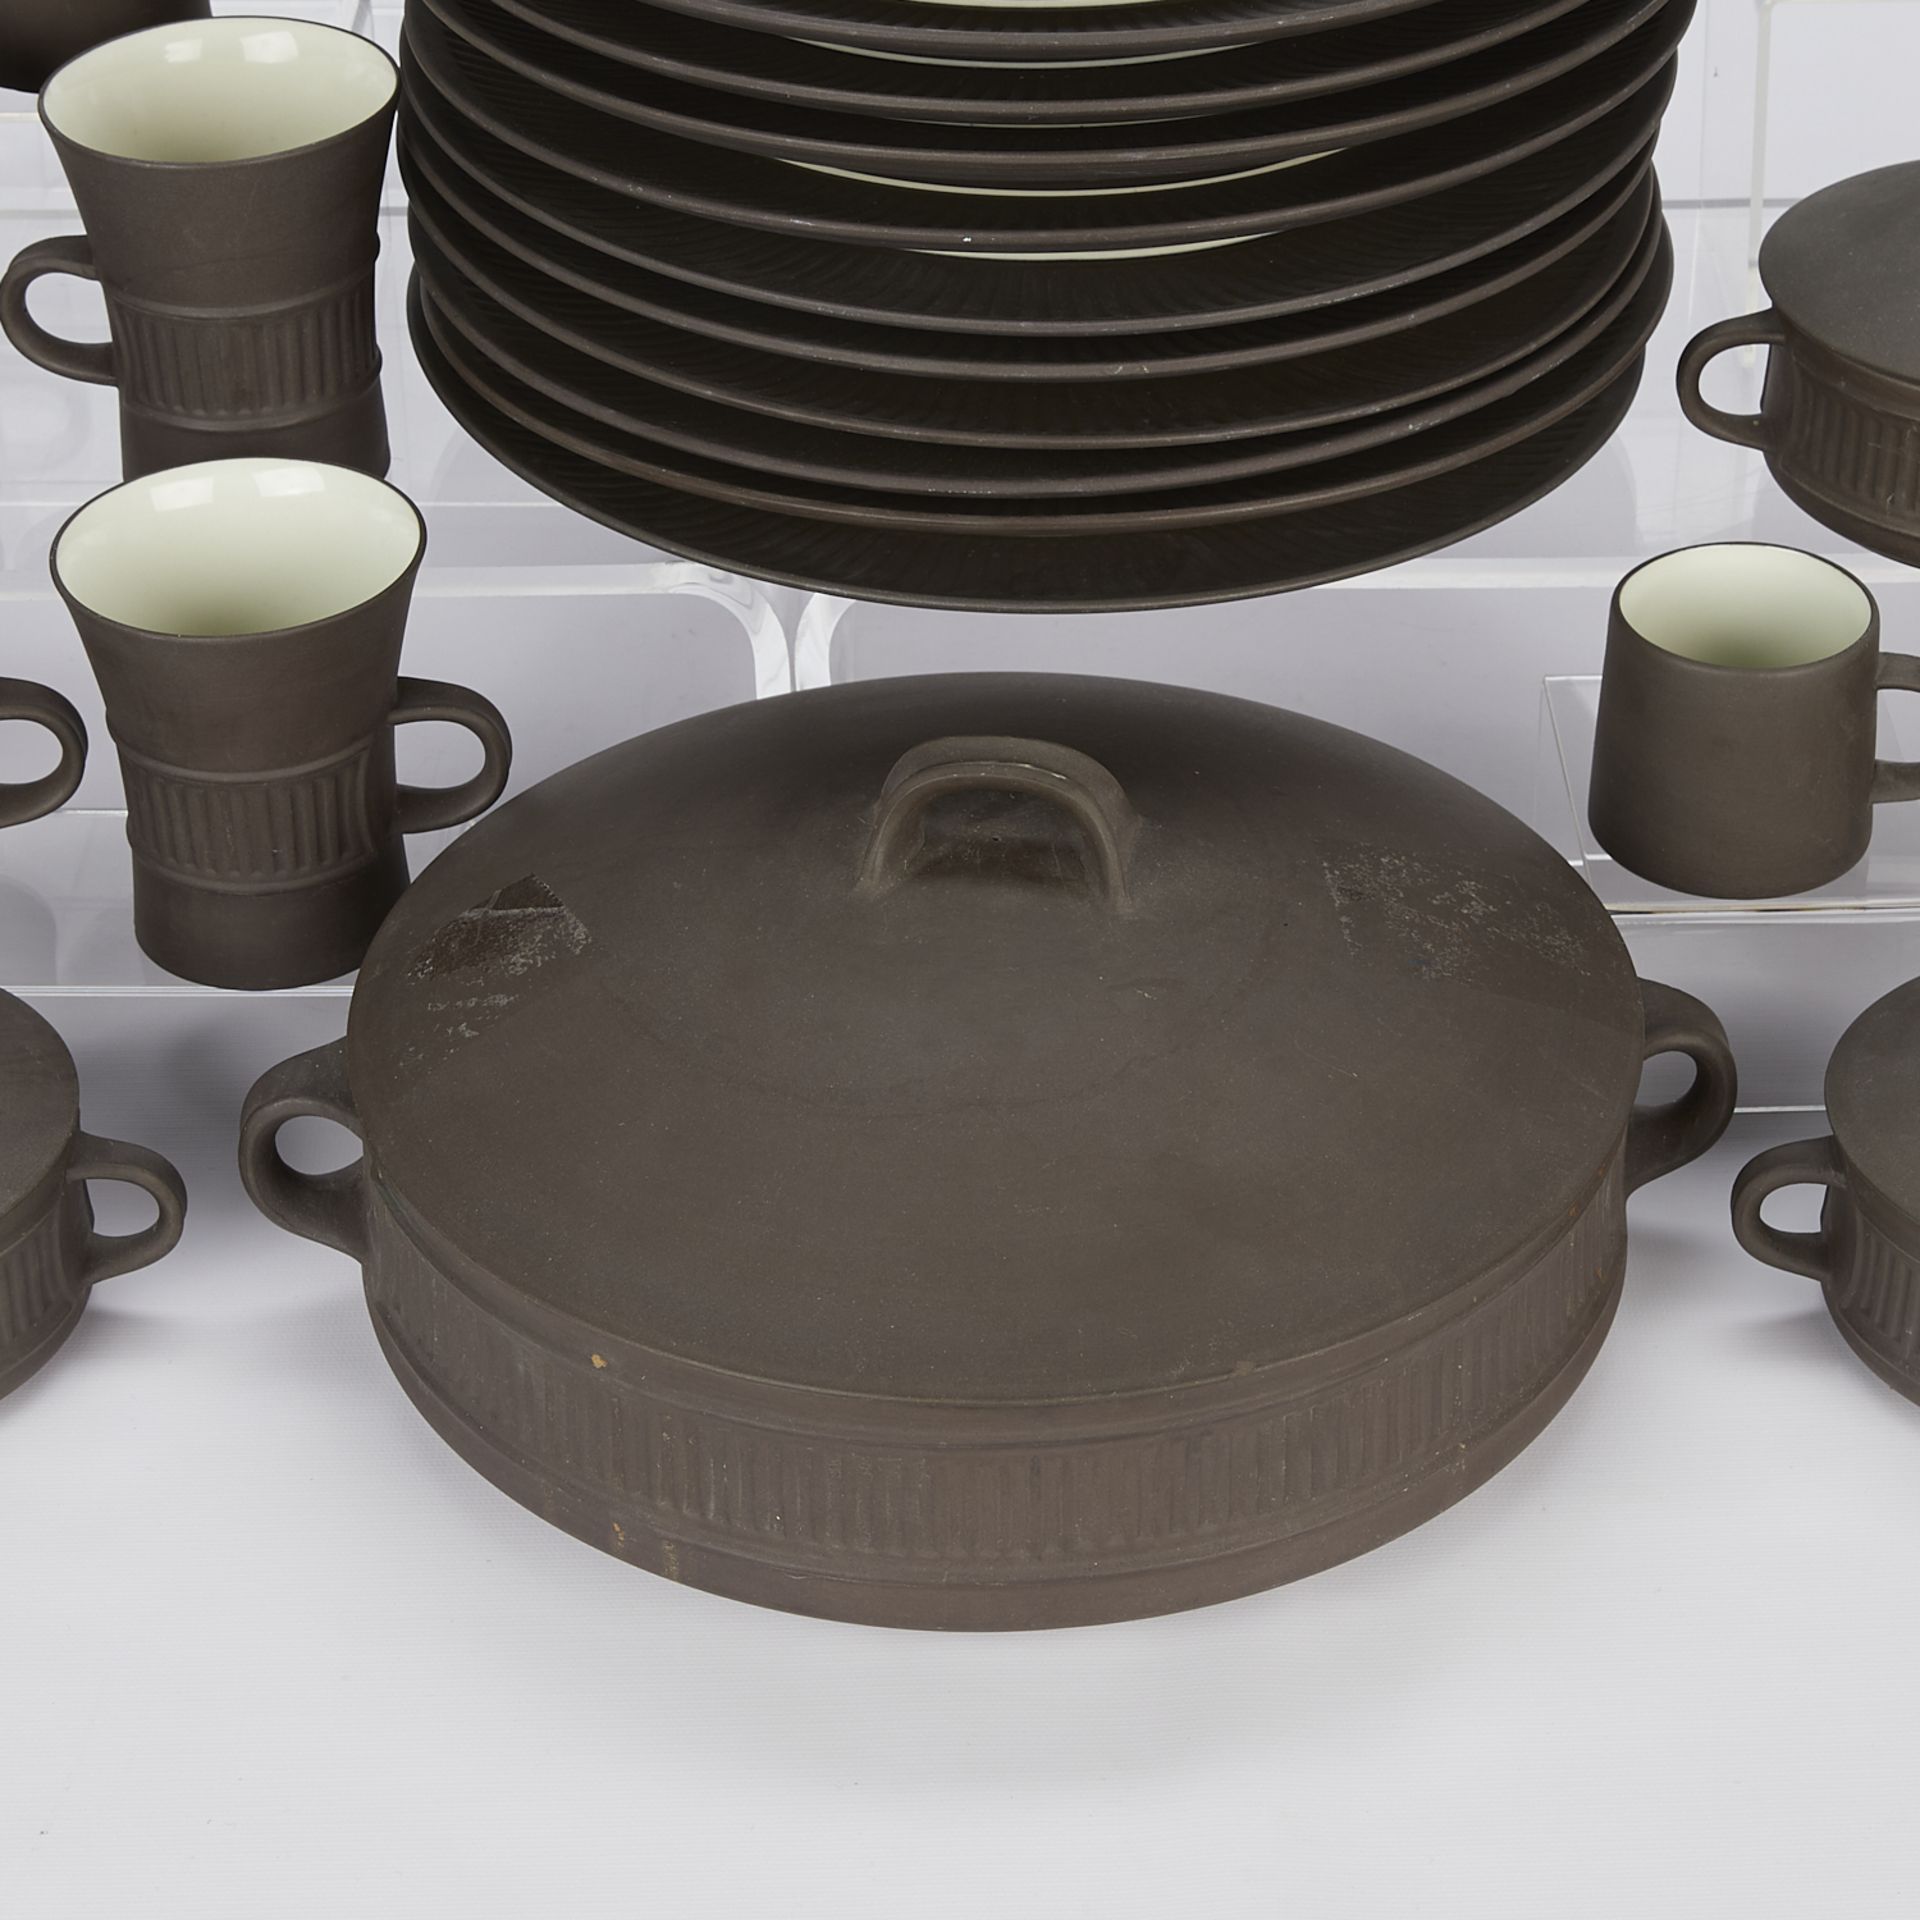 54 Pcs Dansk Flamestone Ceramic Tableware - Image 3 of 23